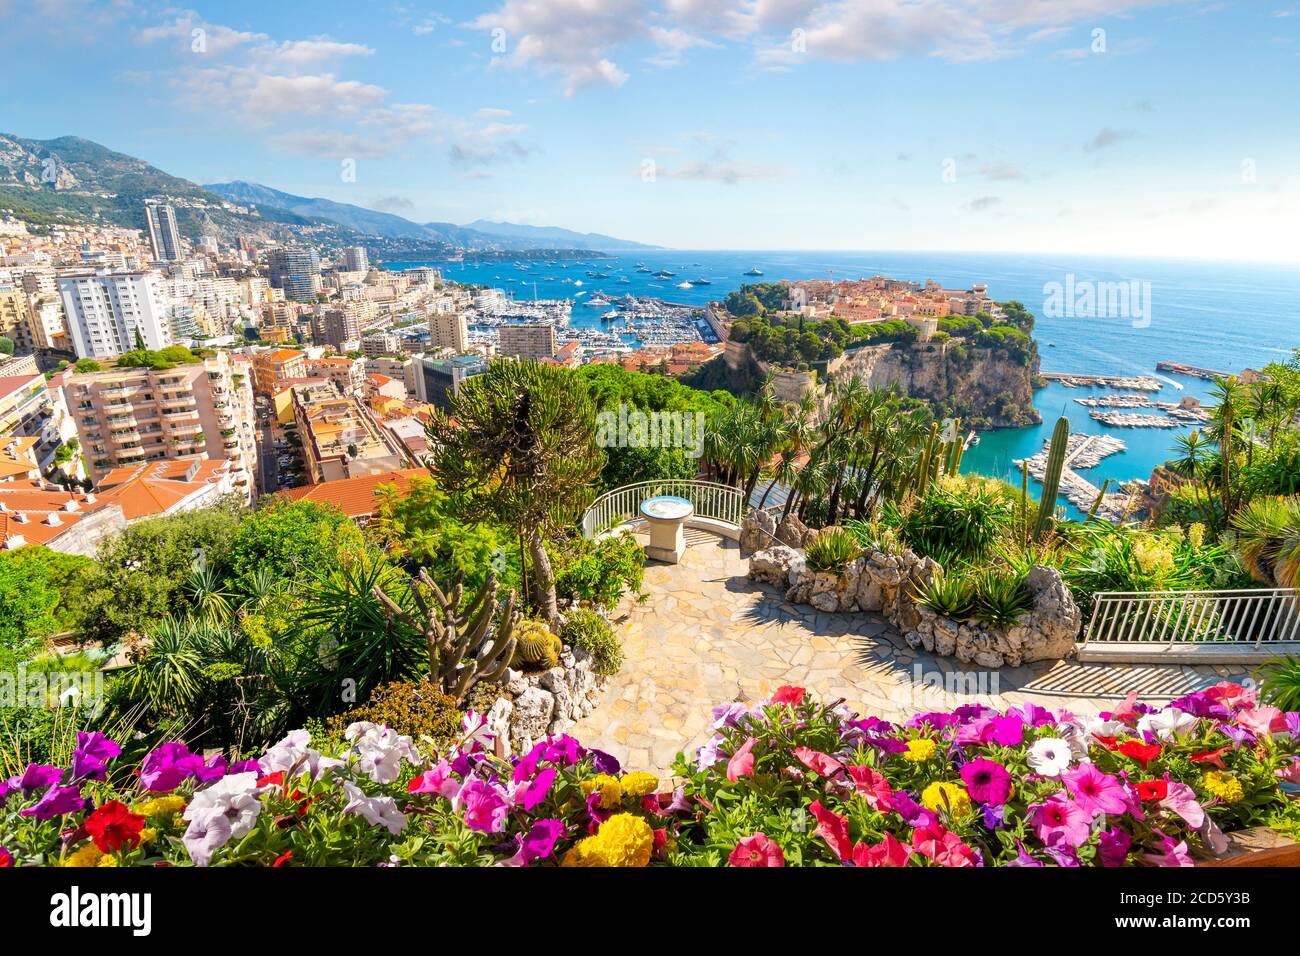 Blick auf die Stadt Monte Carlo mit Felsen, Yachthafen, Mittelmeer und Stadtbild entlang der Küste von Monaco, an der französischen Riviera Stockfoto